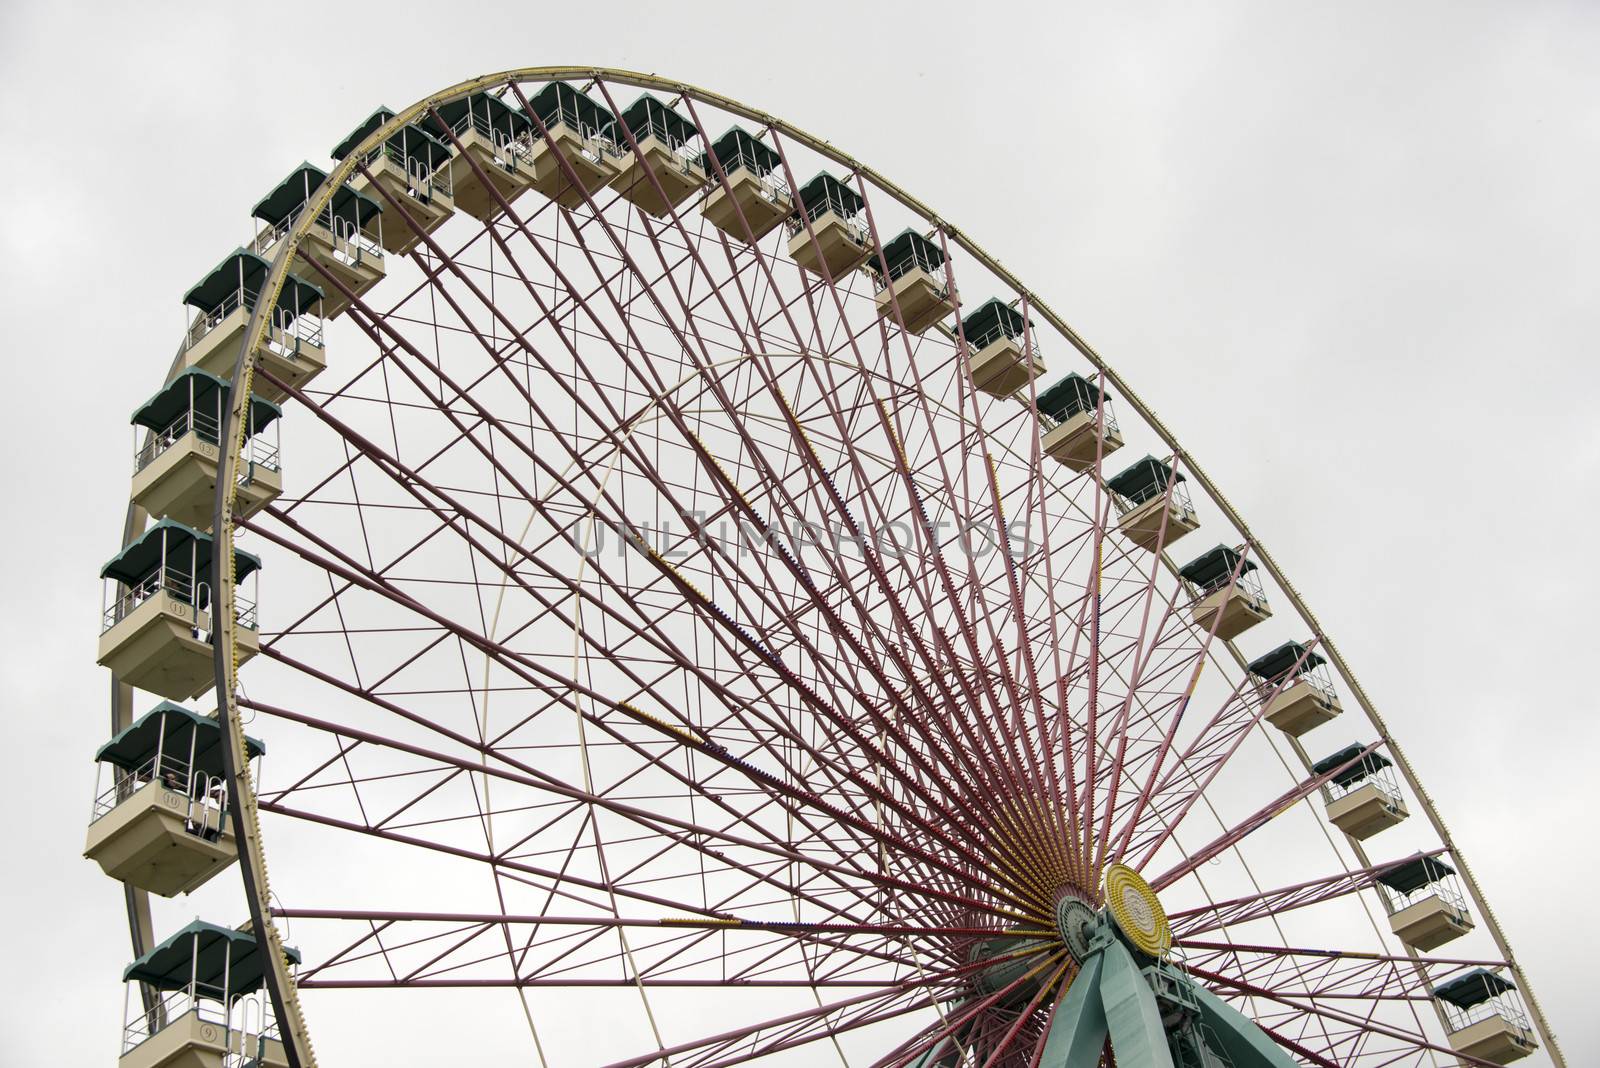 big ferris wheel in holland